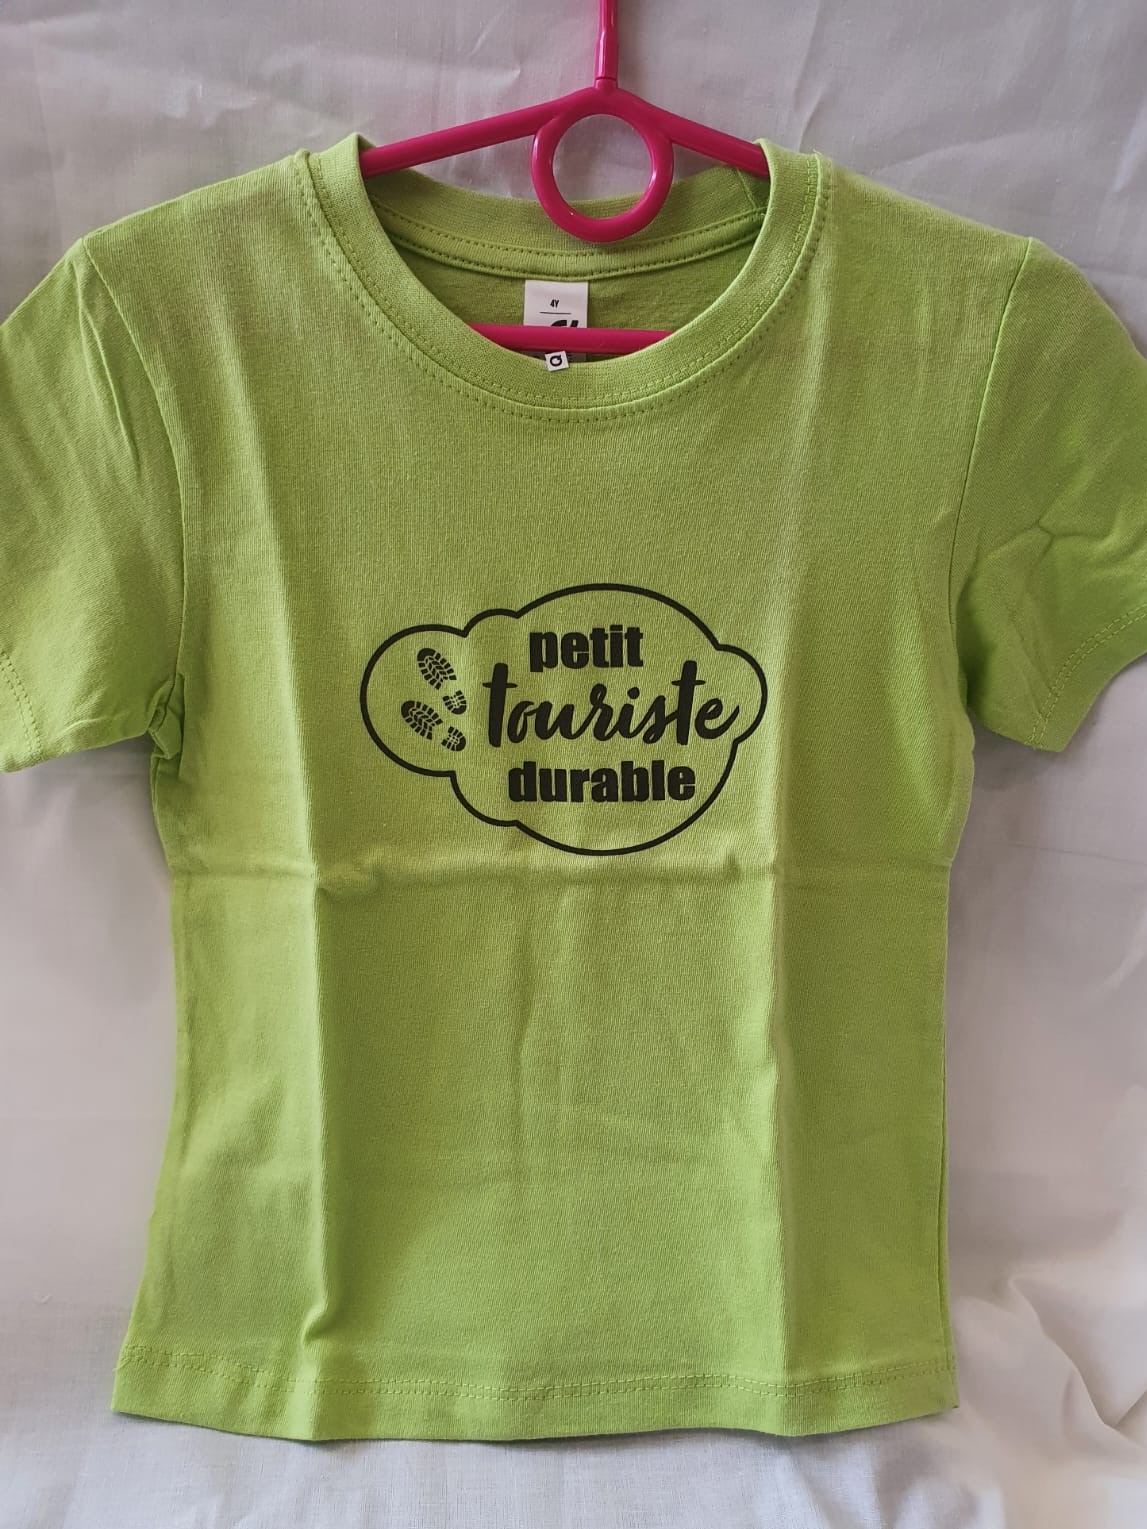 Tee-shirt enfant “Petit touriste durable” vert – 6 ans